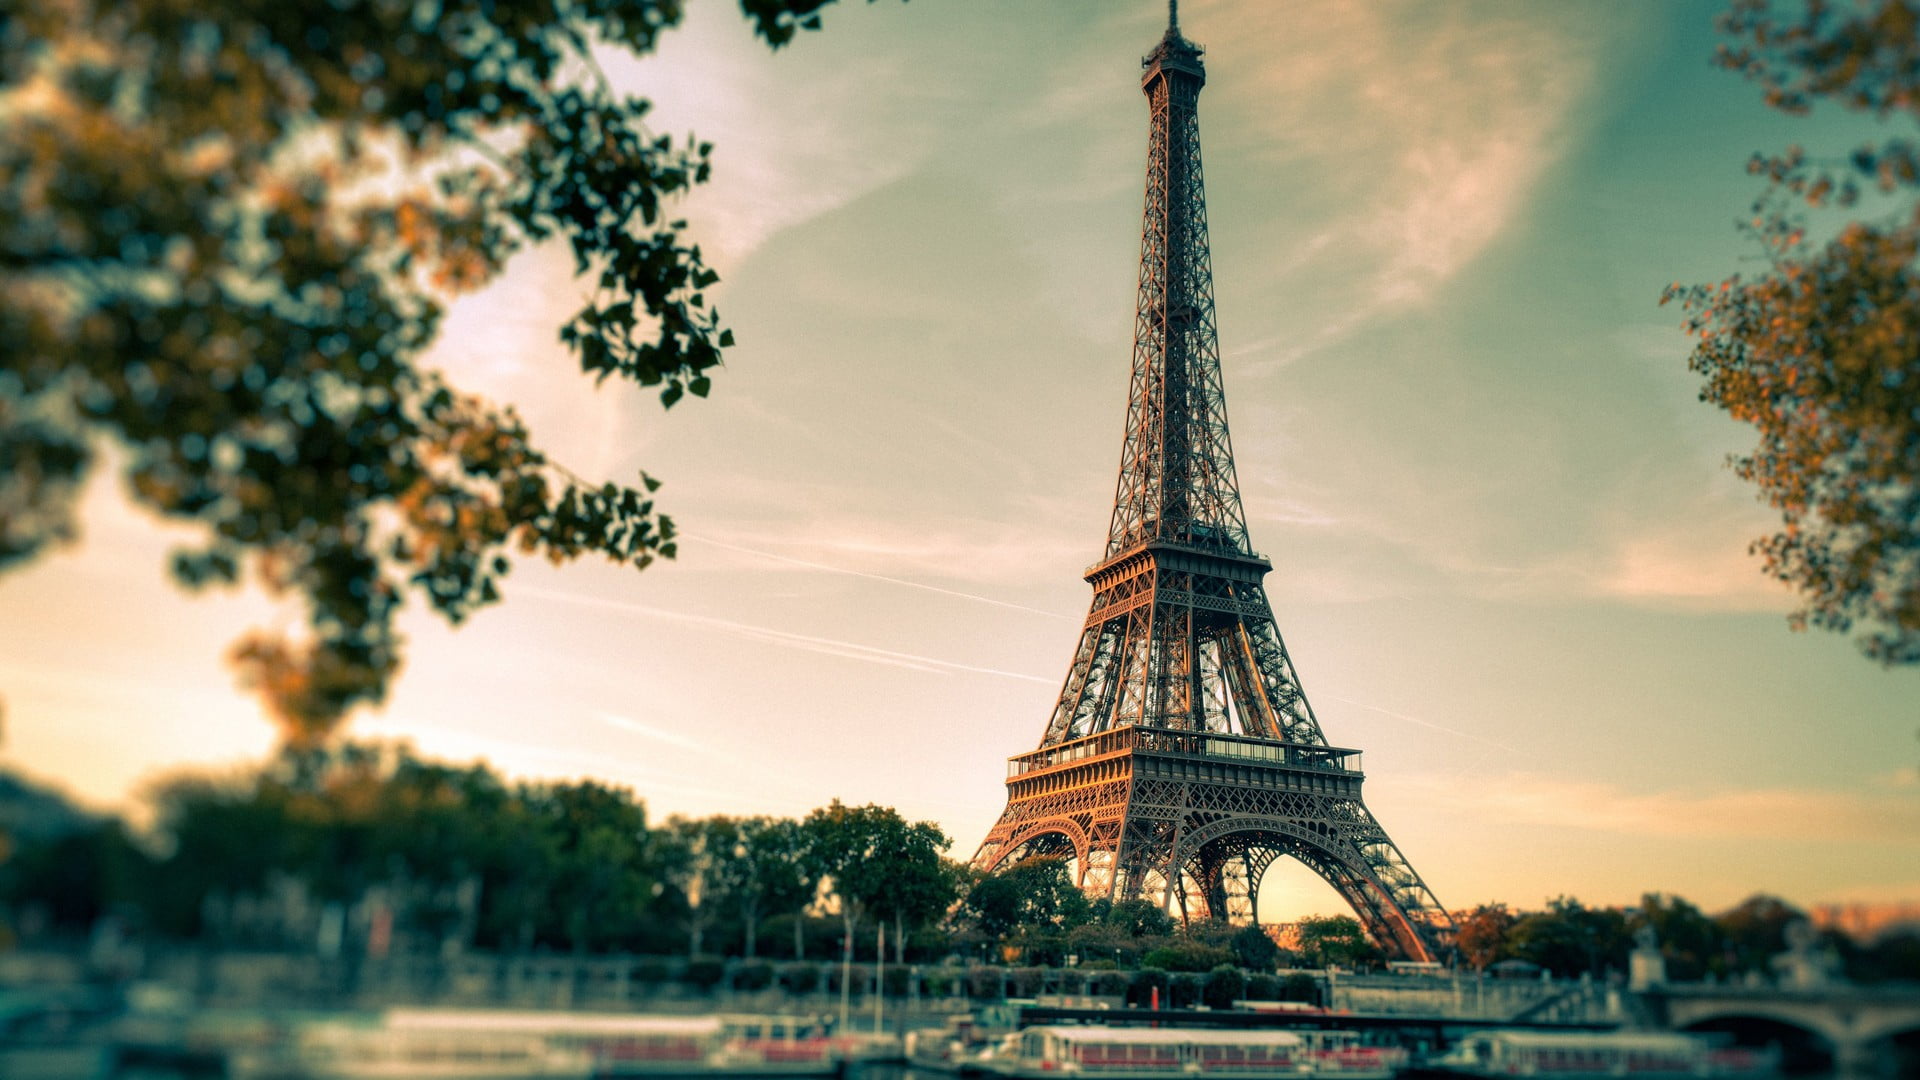 Eiffel Tower, Paris, Eiffel Tower, clouds, Paris, France